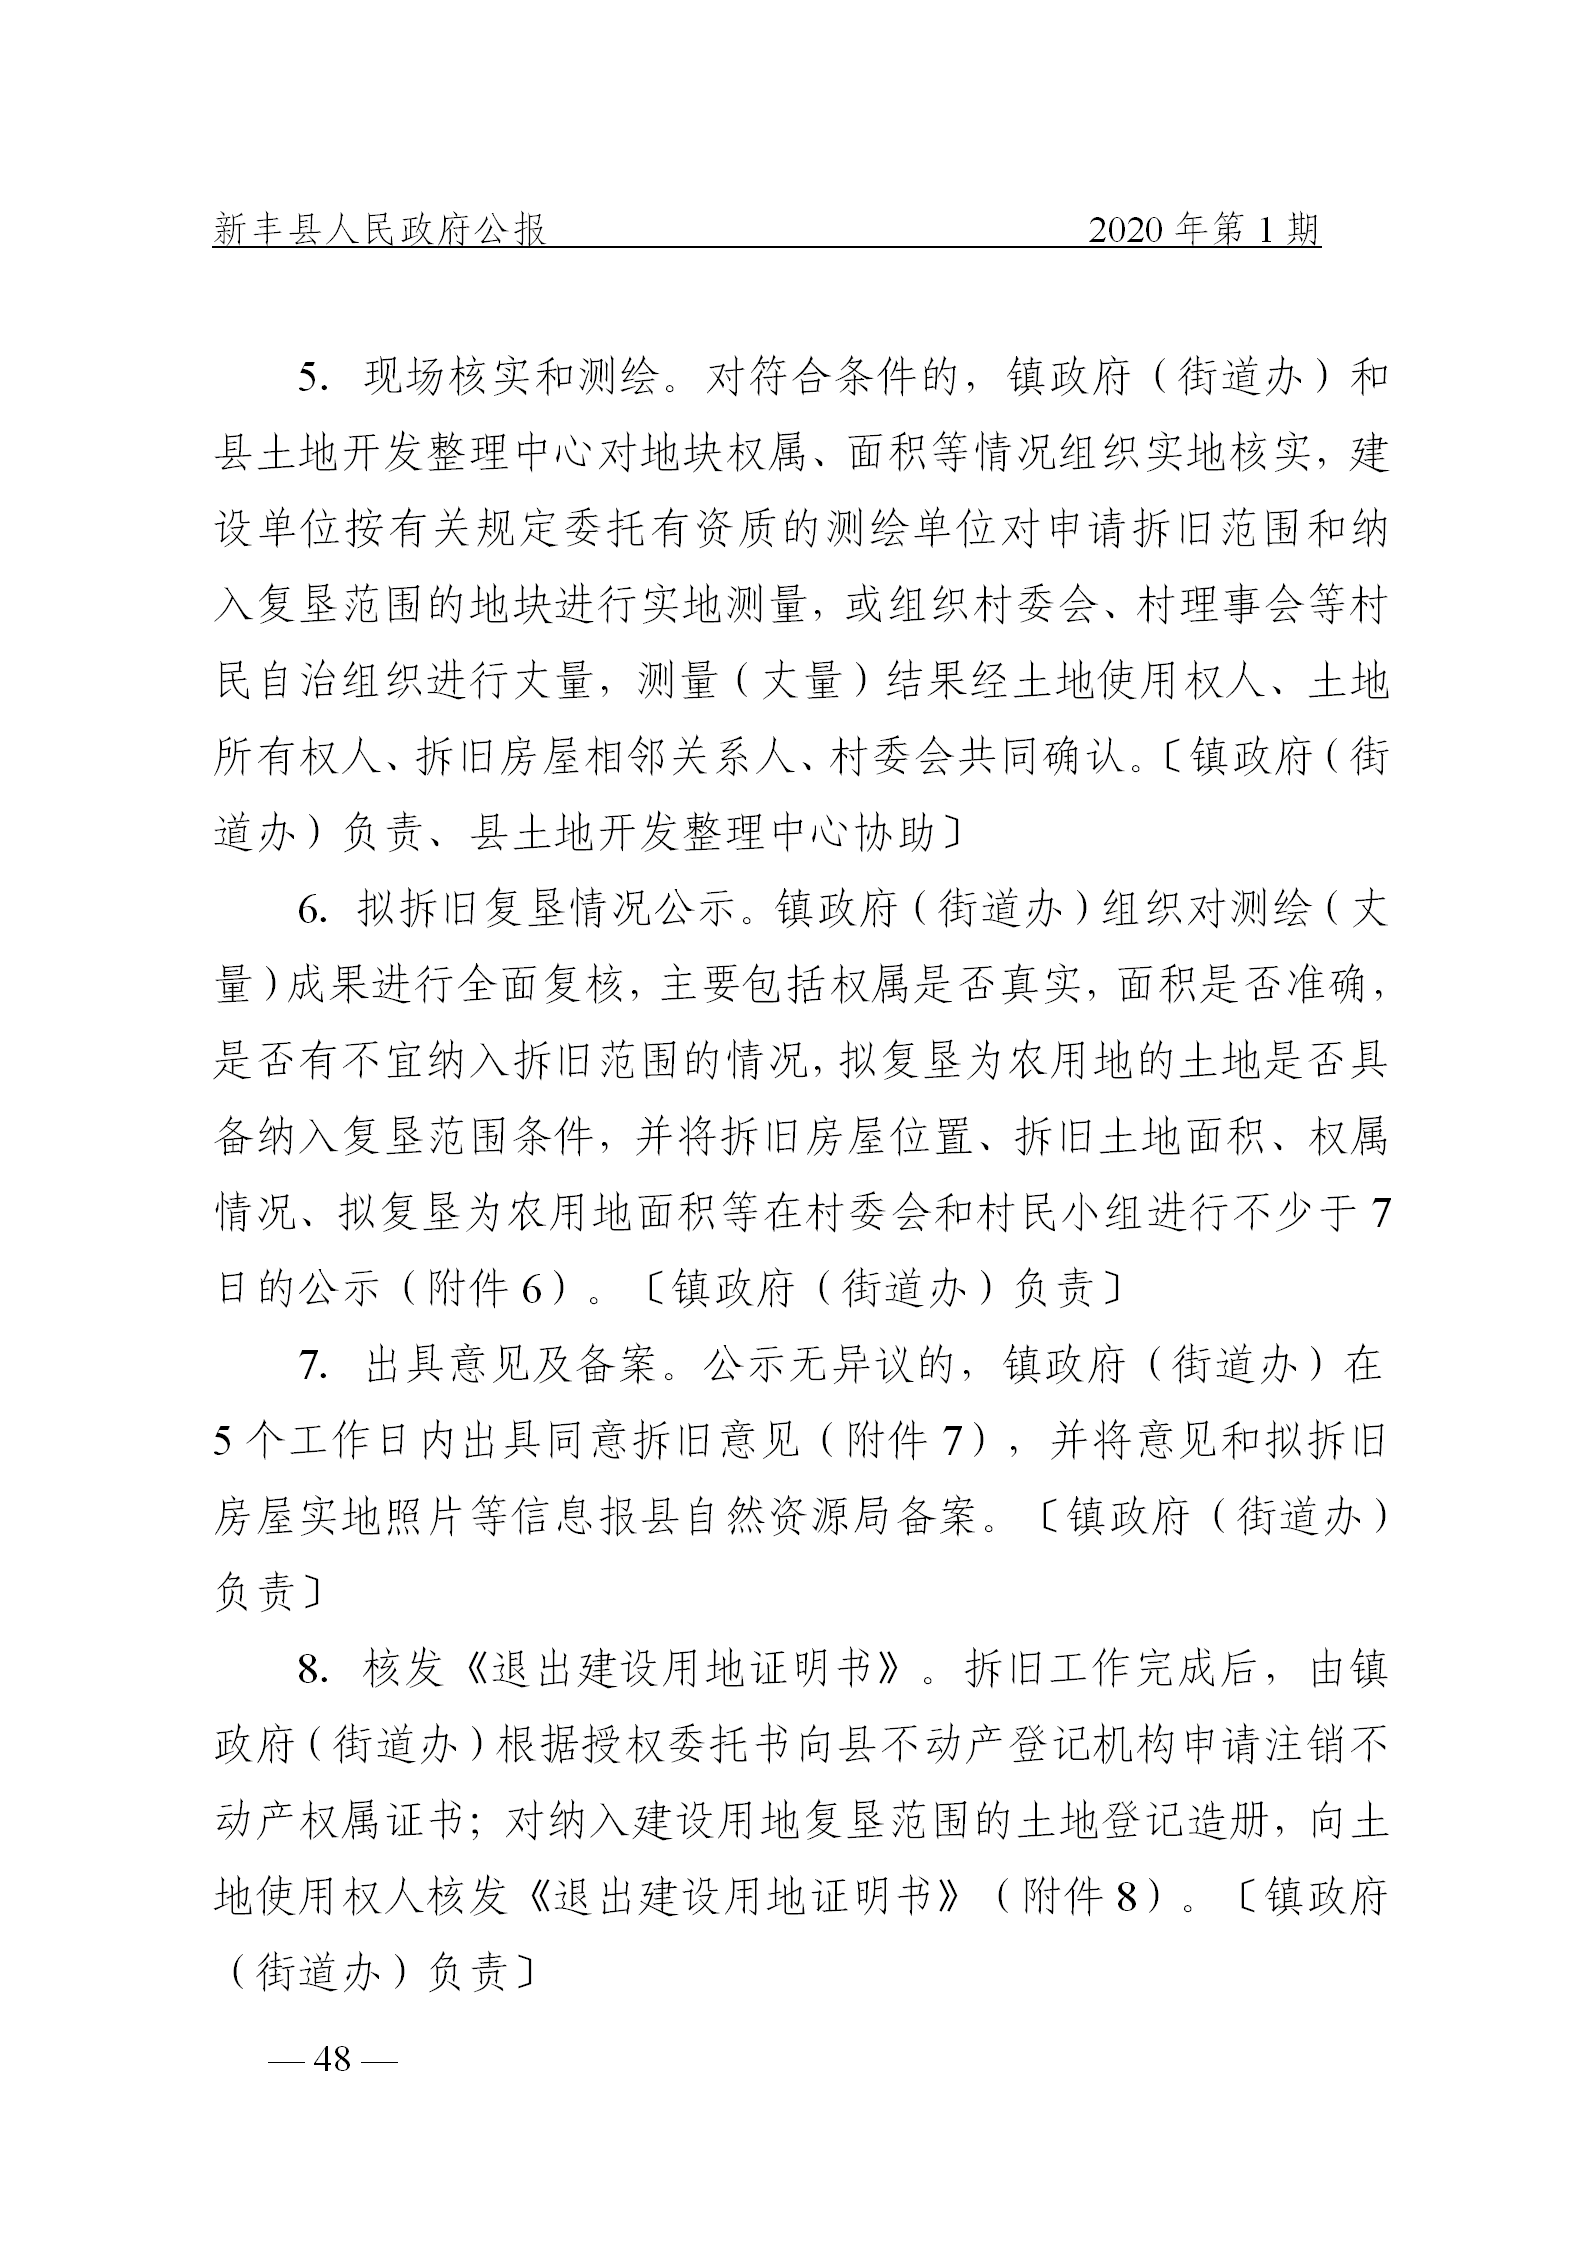 《新丰县人民政府公报》2020年第1期(1)_48.png